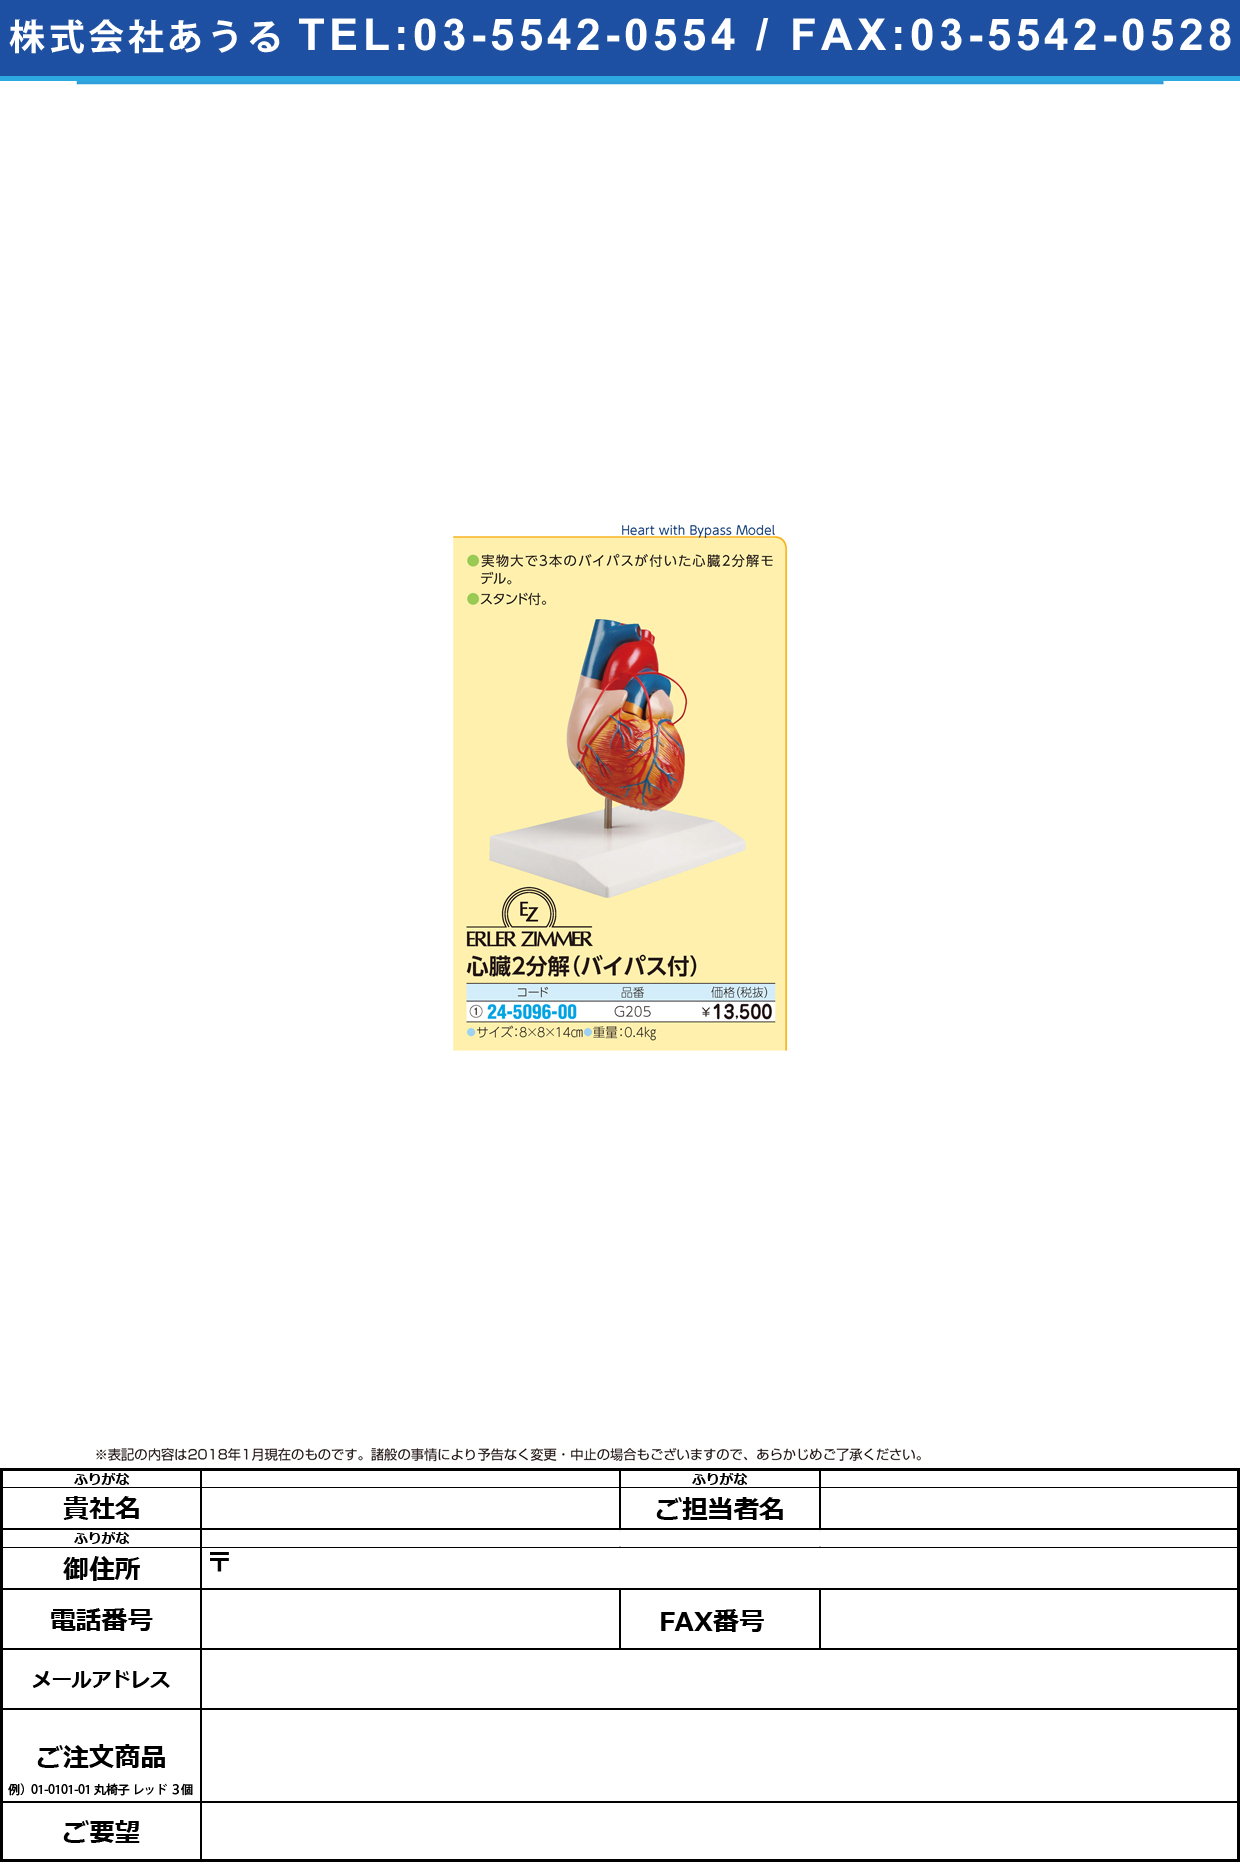 (24-5096-00)心臓２分解モデル（バイパス付） G205 ｼﾝｿﾞｳ2ﾌﾞﾝｶｲﾓﾃﾞﾙ(エルラージーマー社)【1個単位】【2019年カタログ商品】